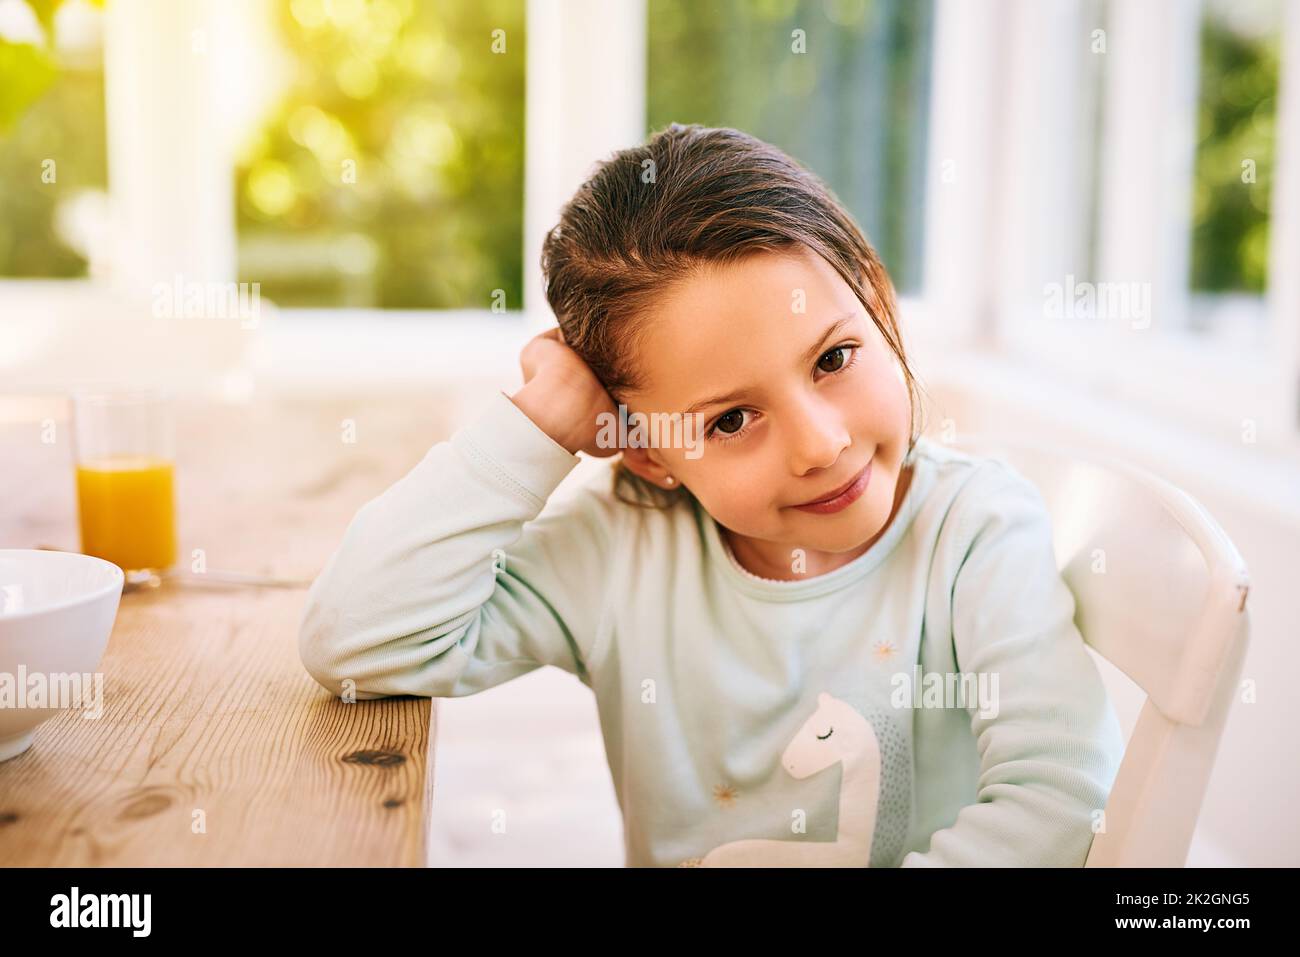 Ich will draußen spielen. Porträt eines fröhlichen kleinen Mädchens, das neben einem Küchentisch sitzt, mit einer Hand neben dem Kopf, während es in die Kamera schaut. Stockfoto